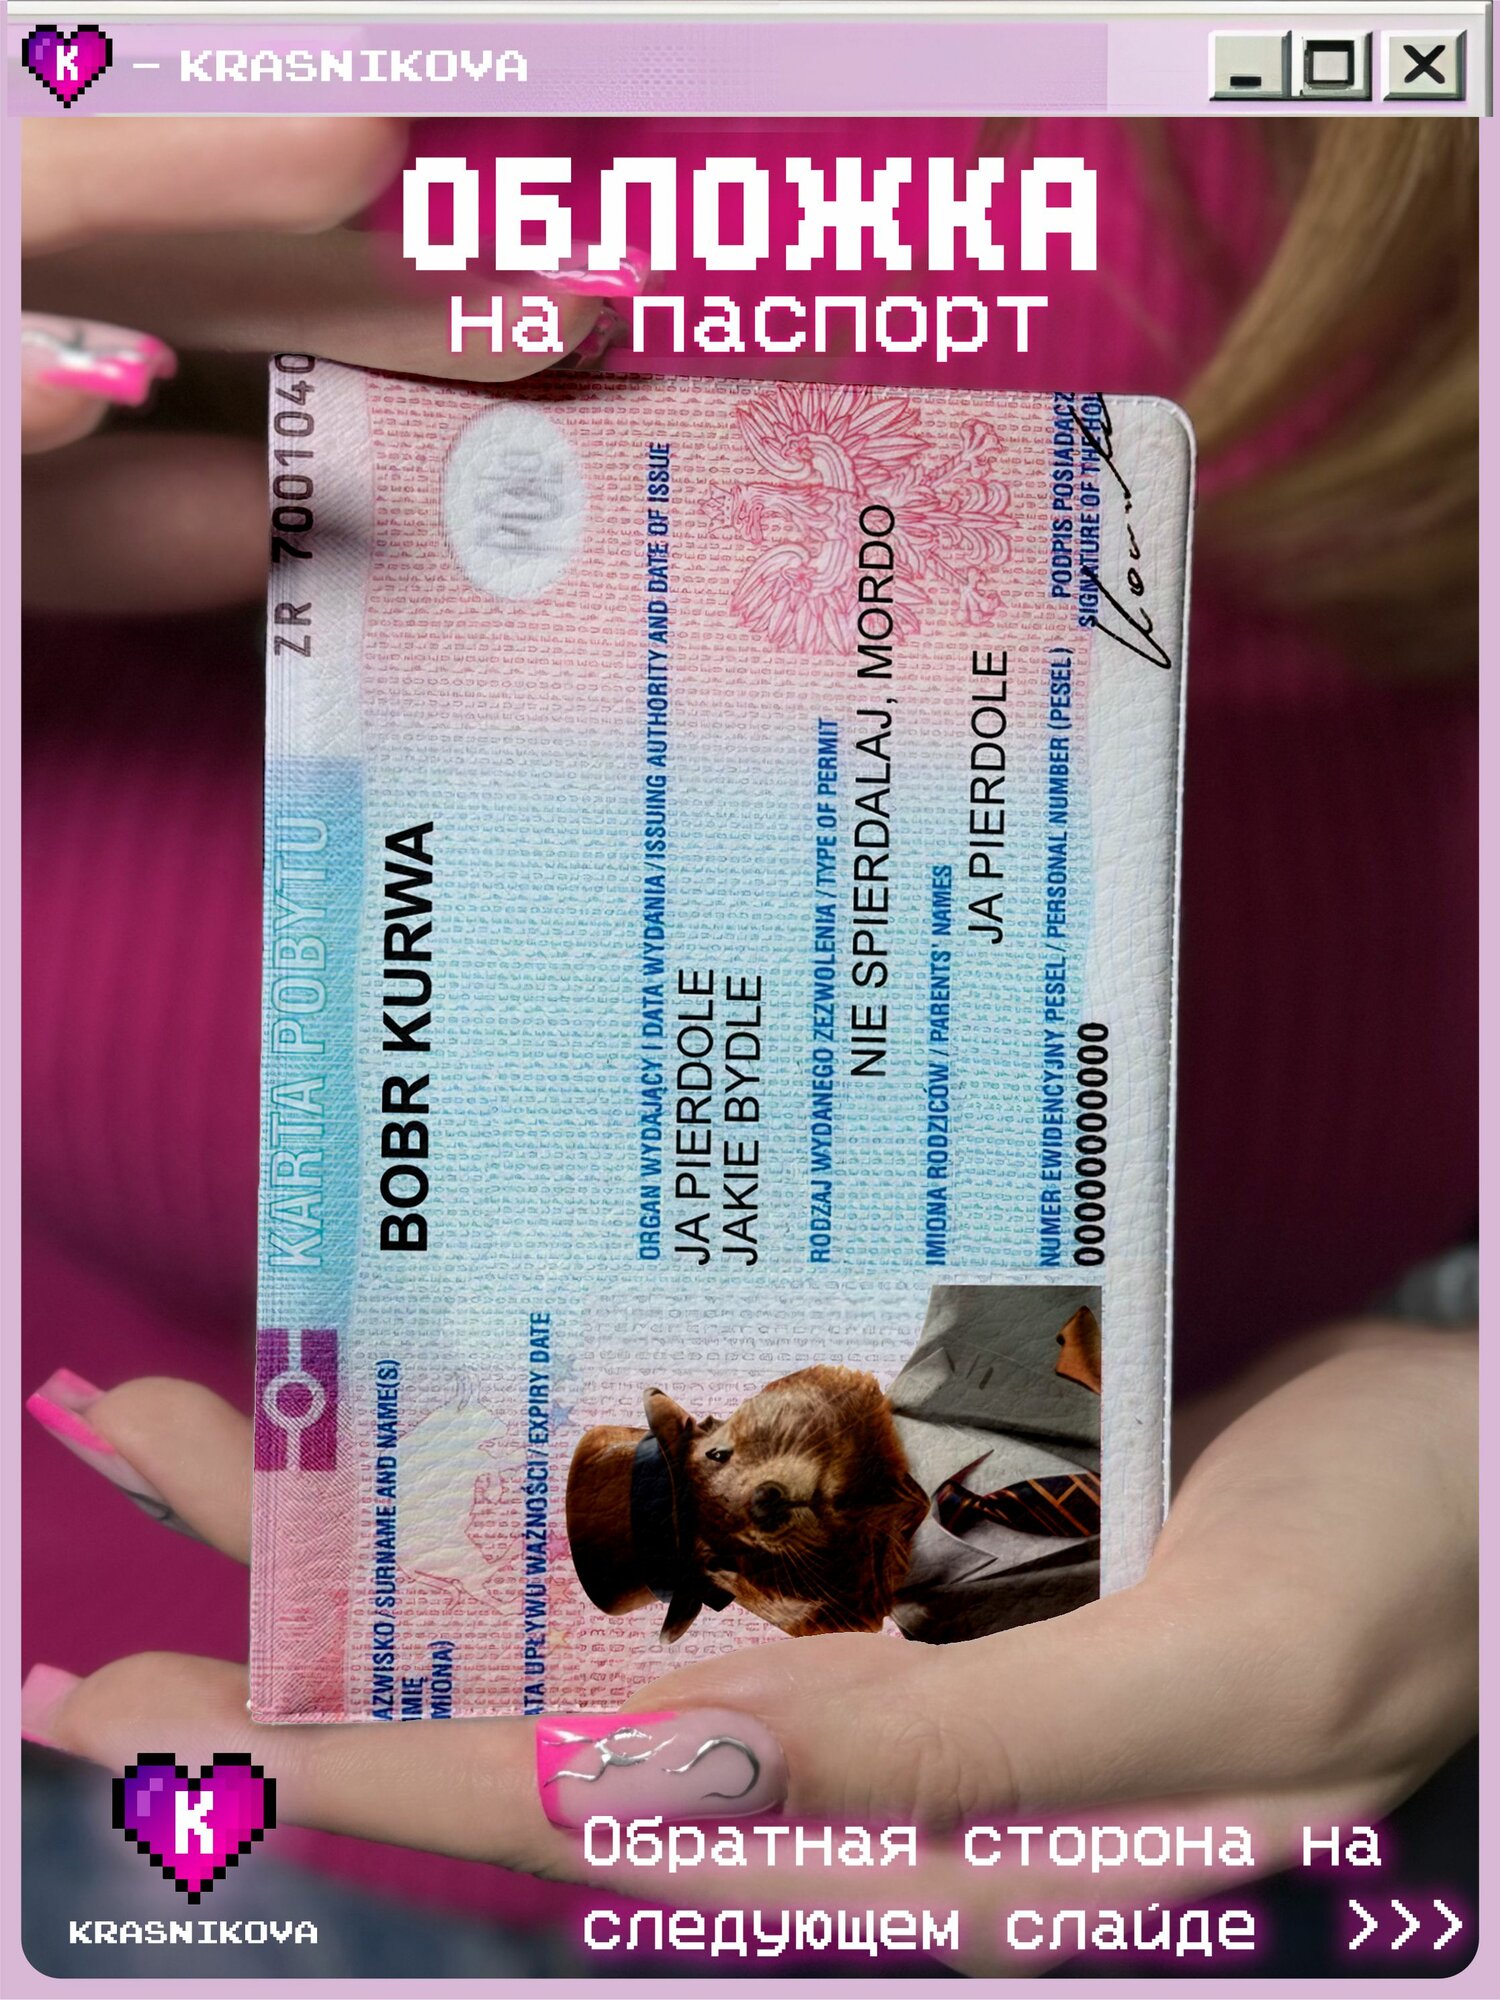 Обложка для паспорта KRASNIKOVA